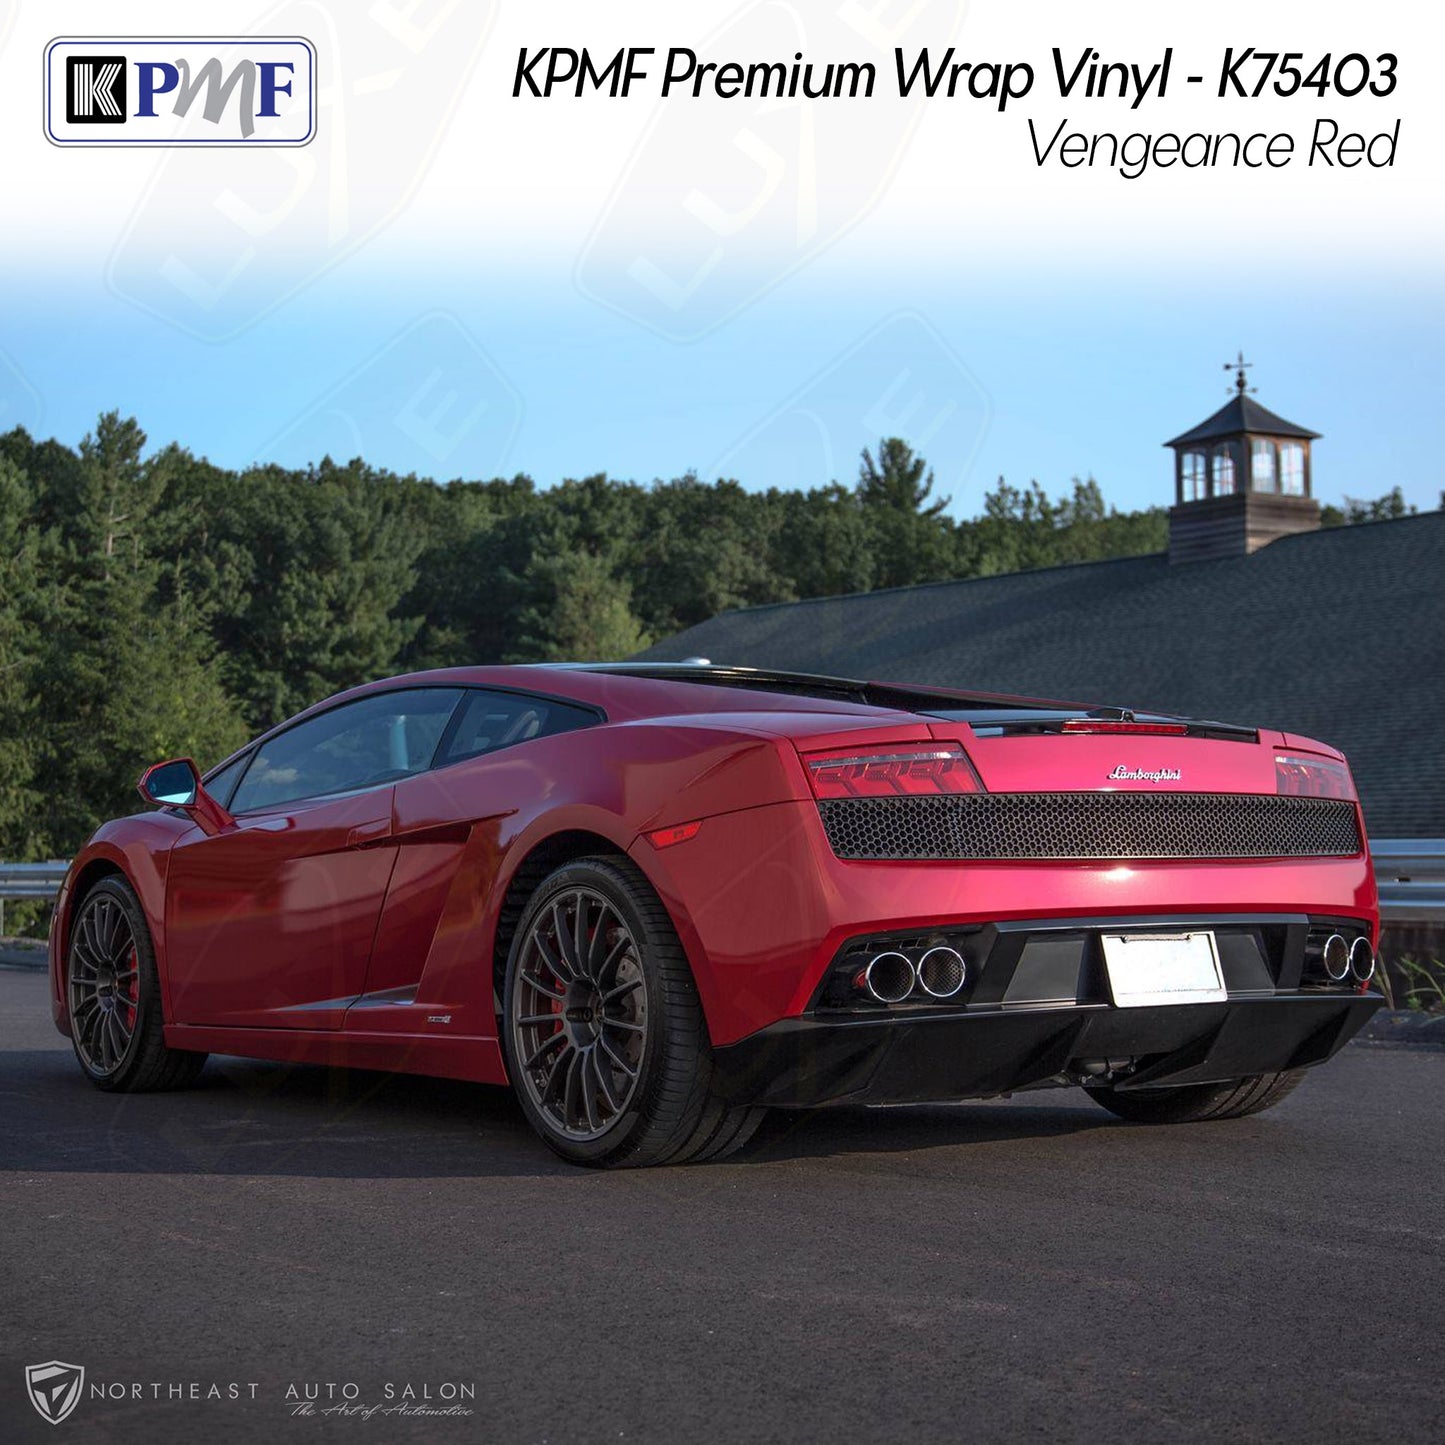 KPMF Wrap Vinyl - K75403 - Gloss Vengeance Red